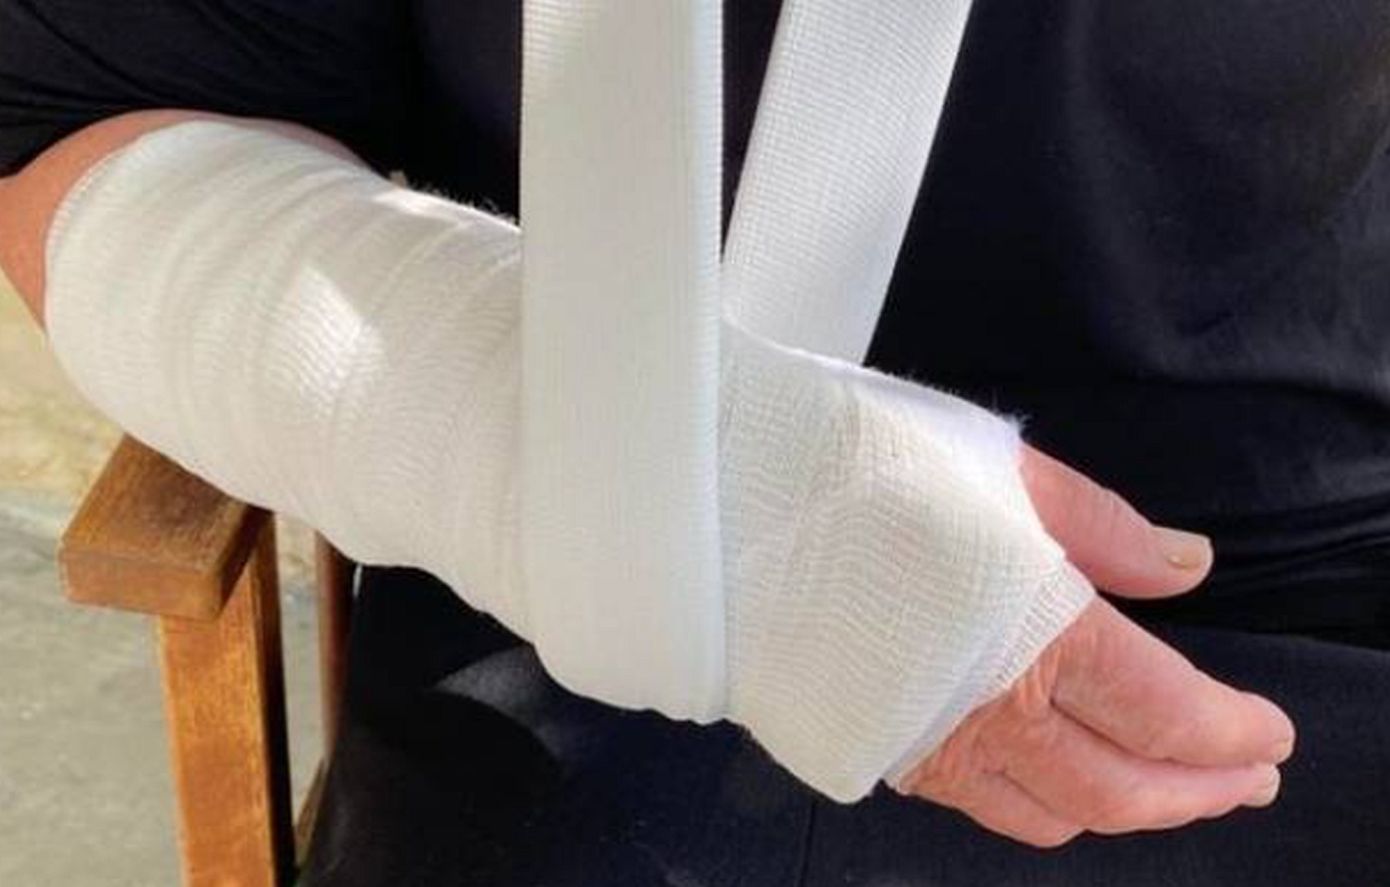 Αγρίνιο: Έσπασαν το χέρι ηλικιωμένης προσπαθώντας να την κλέψουν